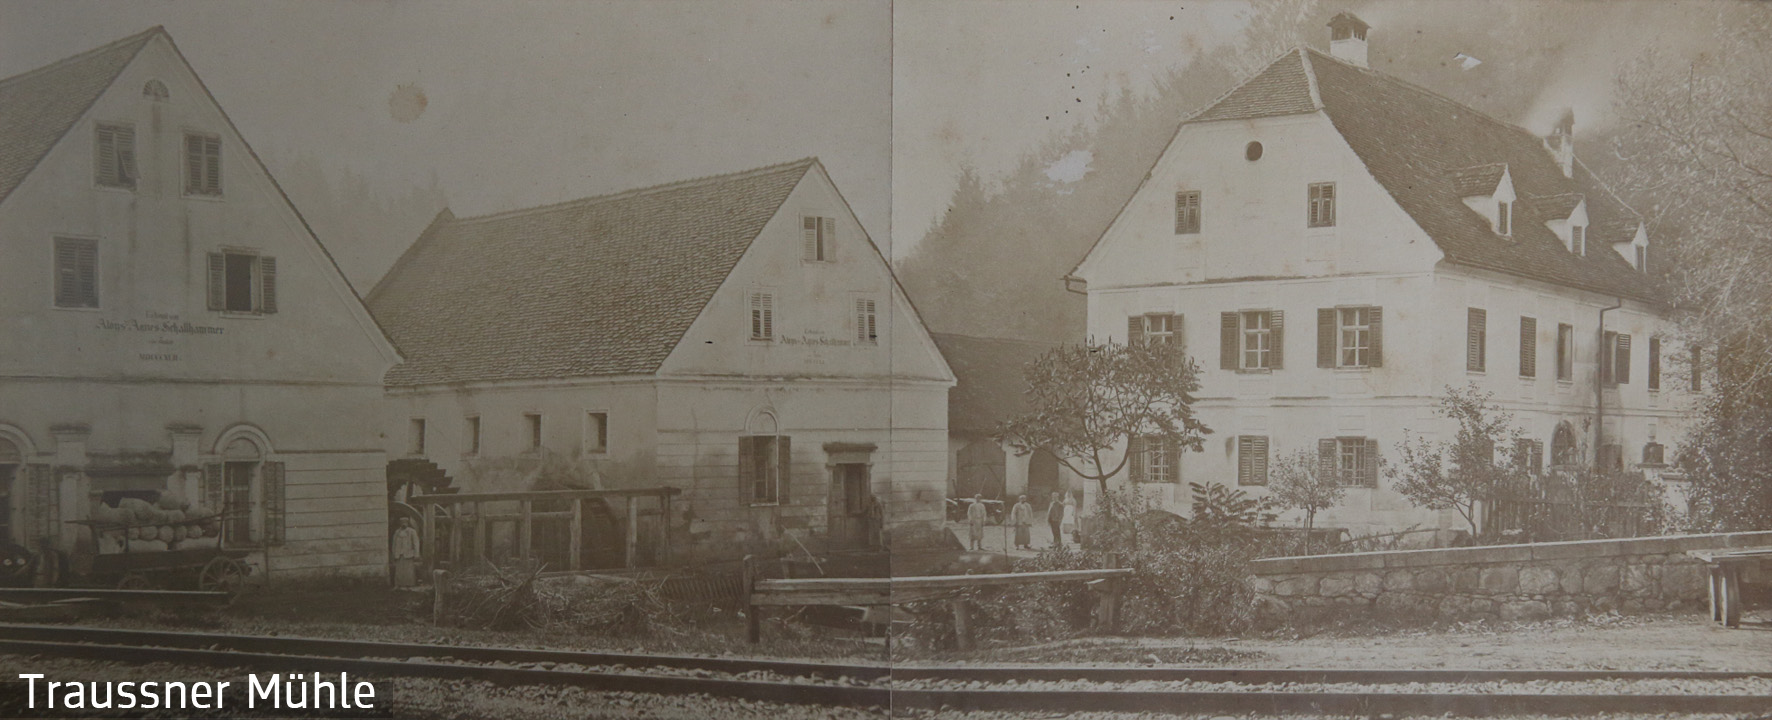 Ehrenhausen, Mühlengebäude erbaut von Alois und Agnes Schallhammer, Foto um 1880